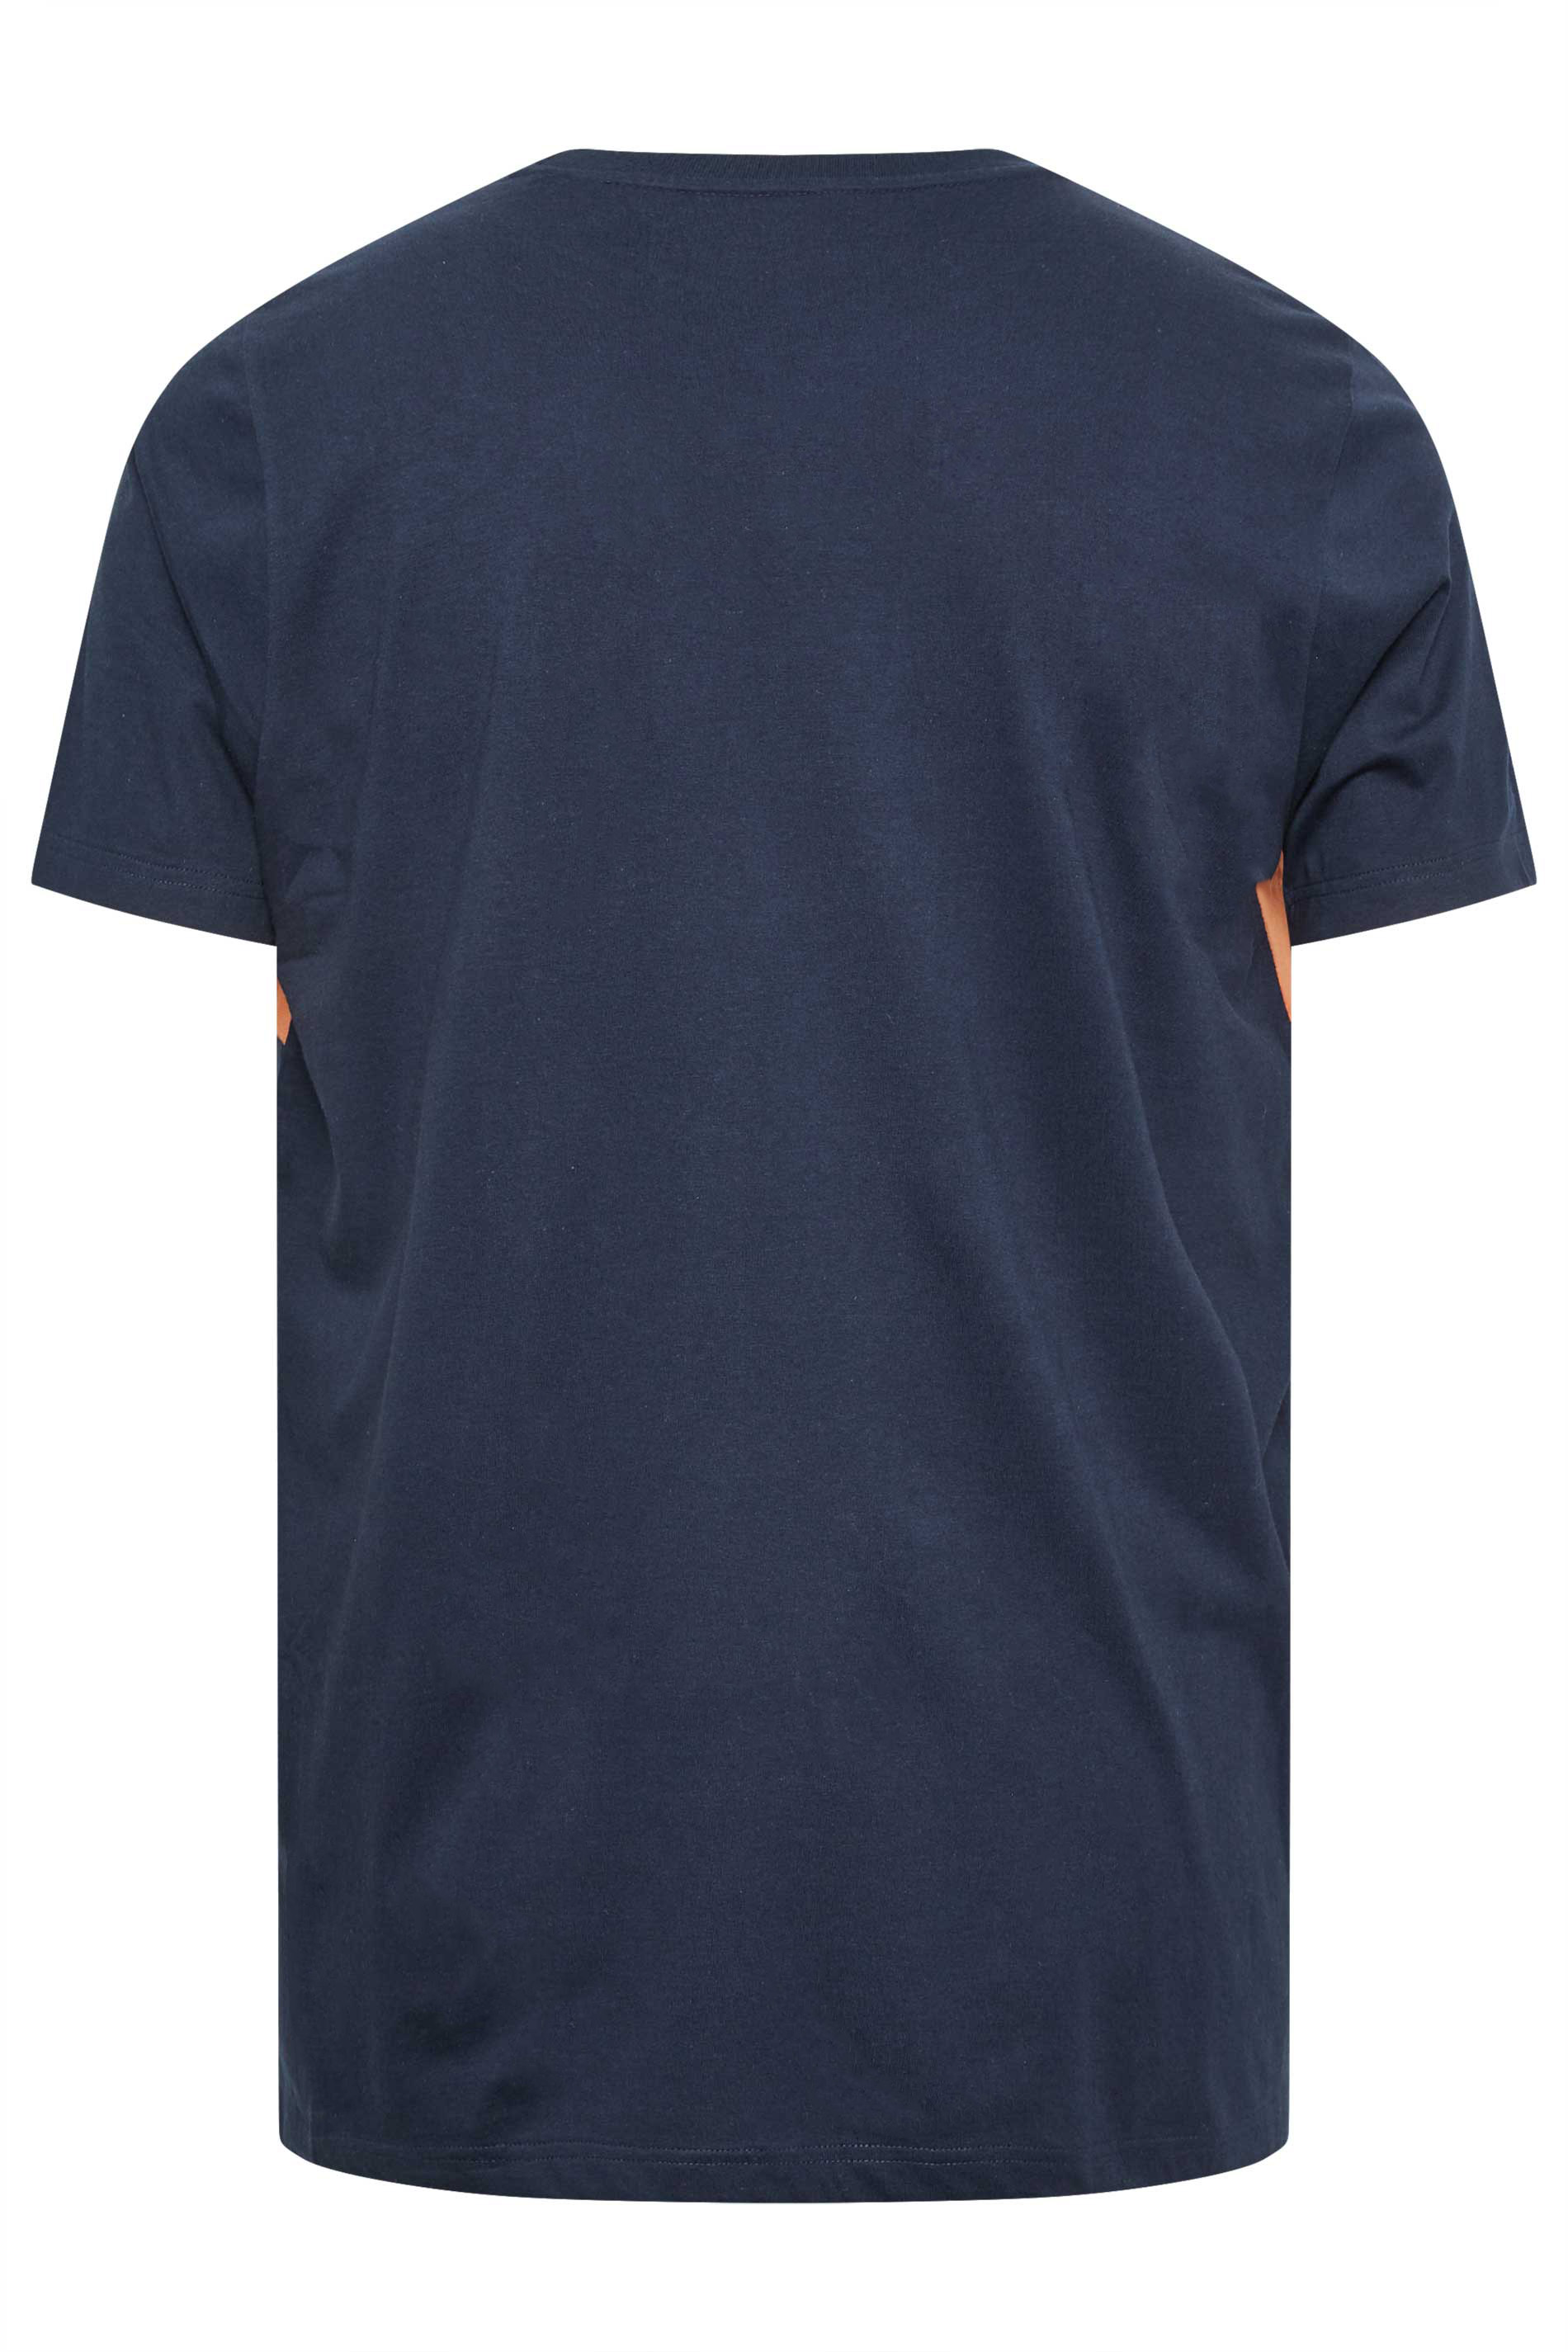 BadRhino Blue & Orange 'Originals' Short Sleeve T-Shirt | BadRhino 3